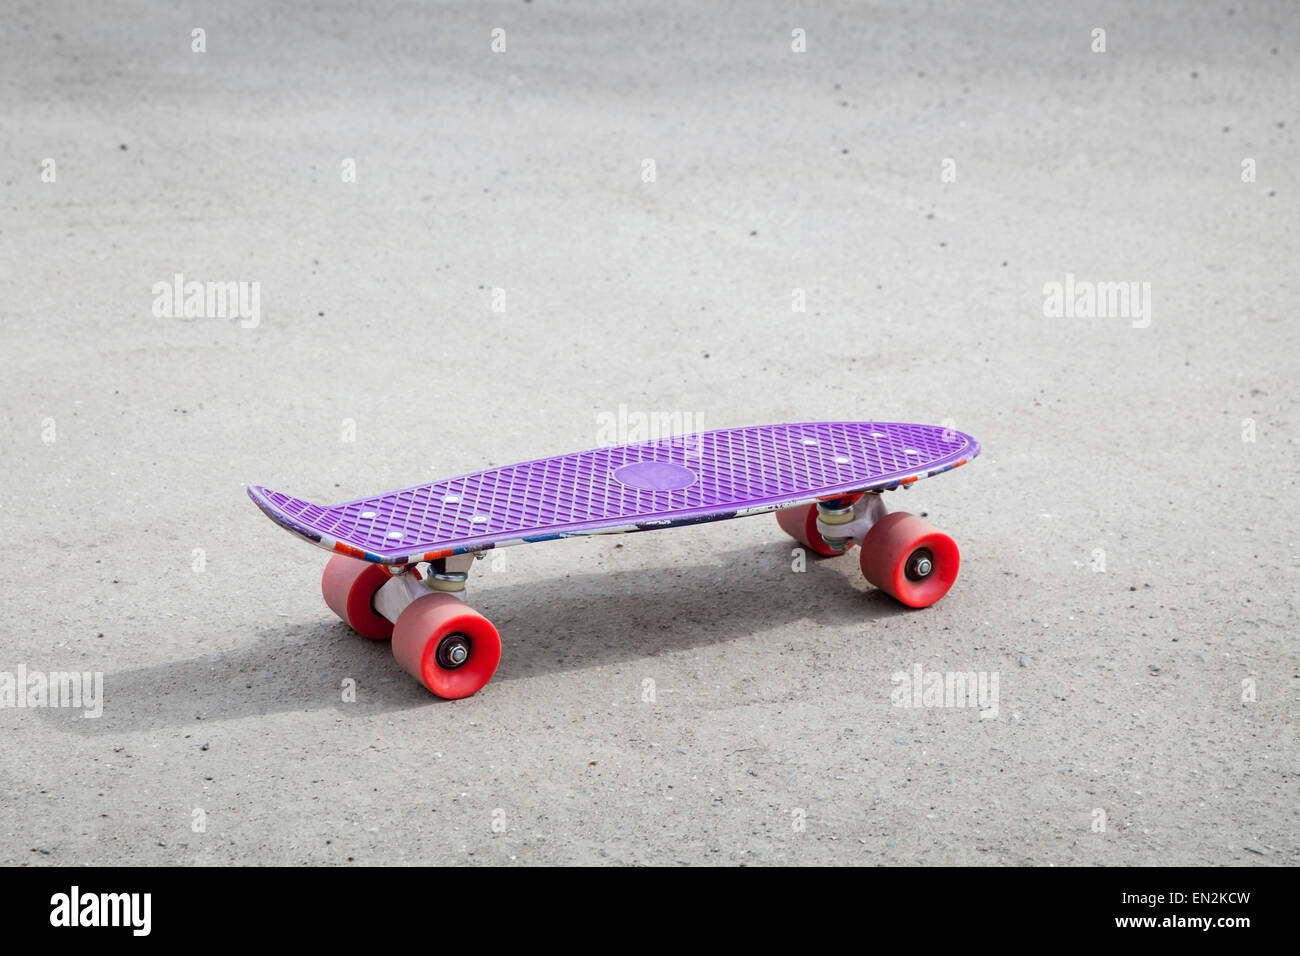 Petite taille violet moderne skateboard en plastique vide sur une route asphaltée en milieu urbain Banque D'Images